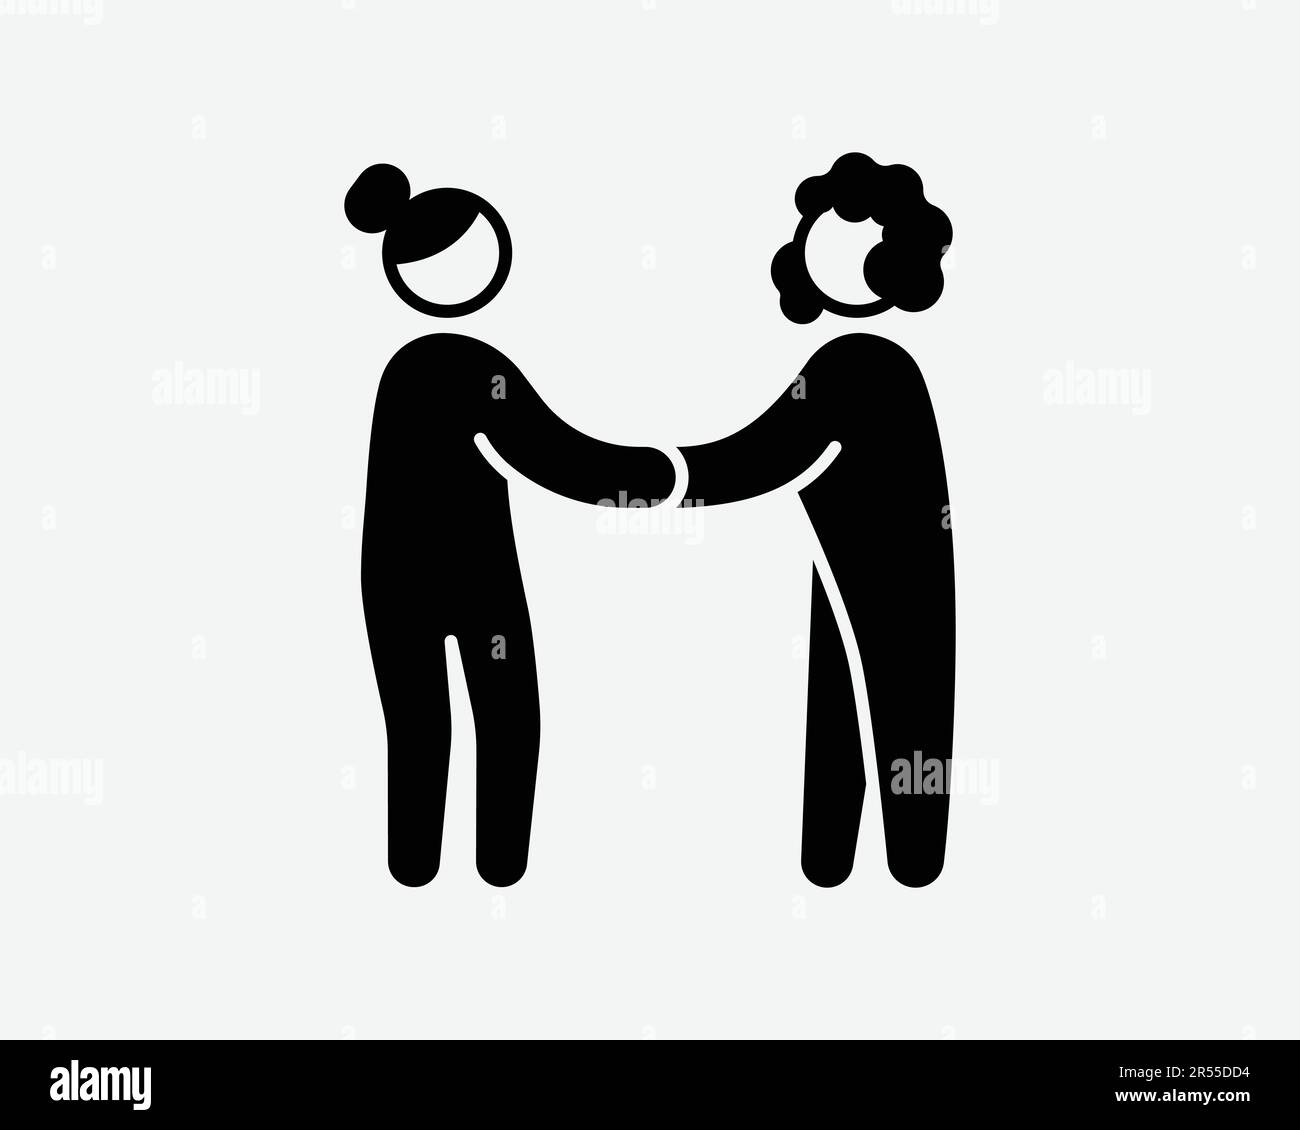 Frauen-Handshake-Symbol. Treue zustimmen Begrüßung Vertrag Partnerschaft Deal Frauenzeichen Schwarze Grafik Illustration Clipart EPS-Vektor Stock Vektor